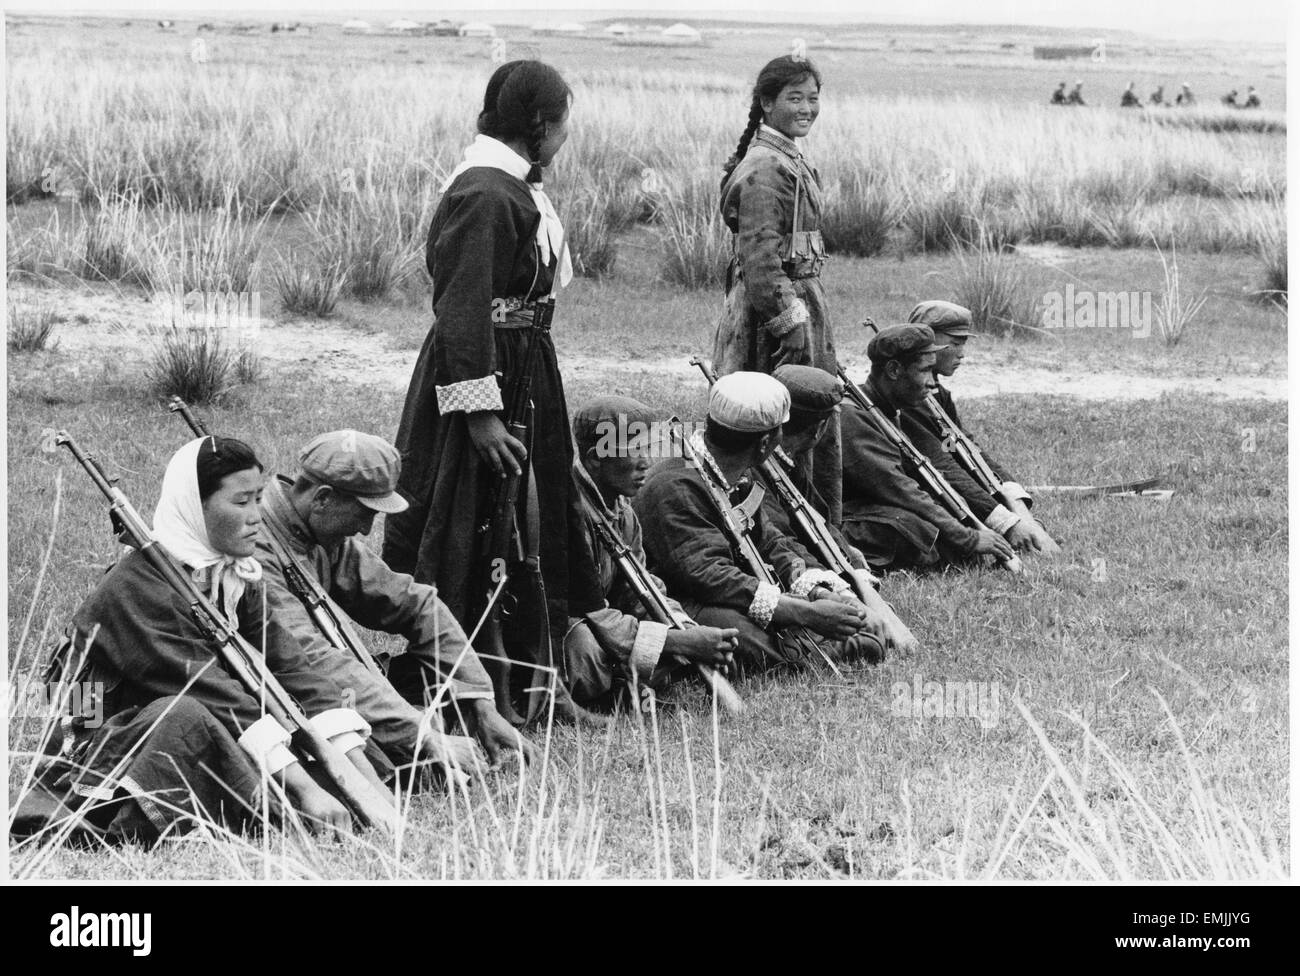 "Milizia Team Shilingala in Mongolia interna", Film still, dal film documentario "Relazione dalla Cina", Foto di Bob Kass, 1973 Foto Stock